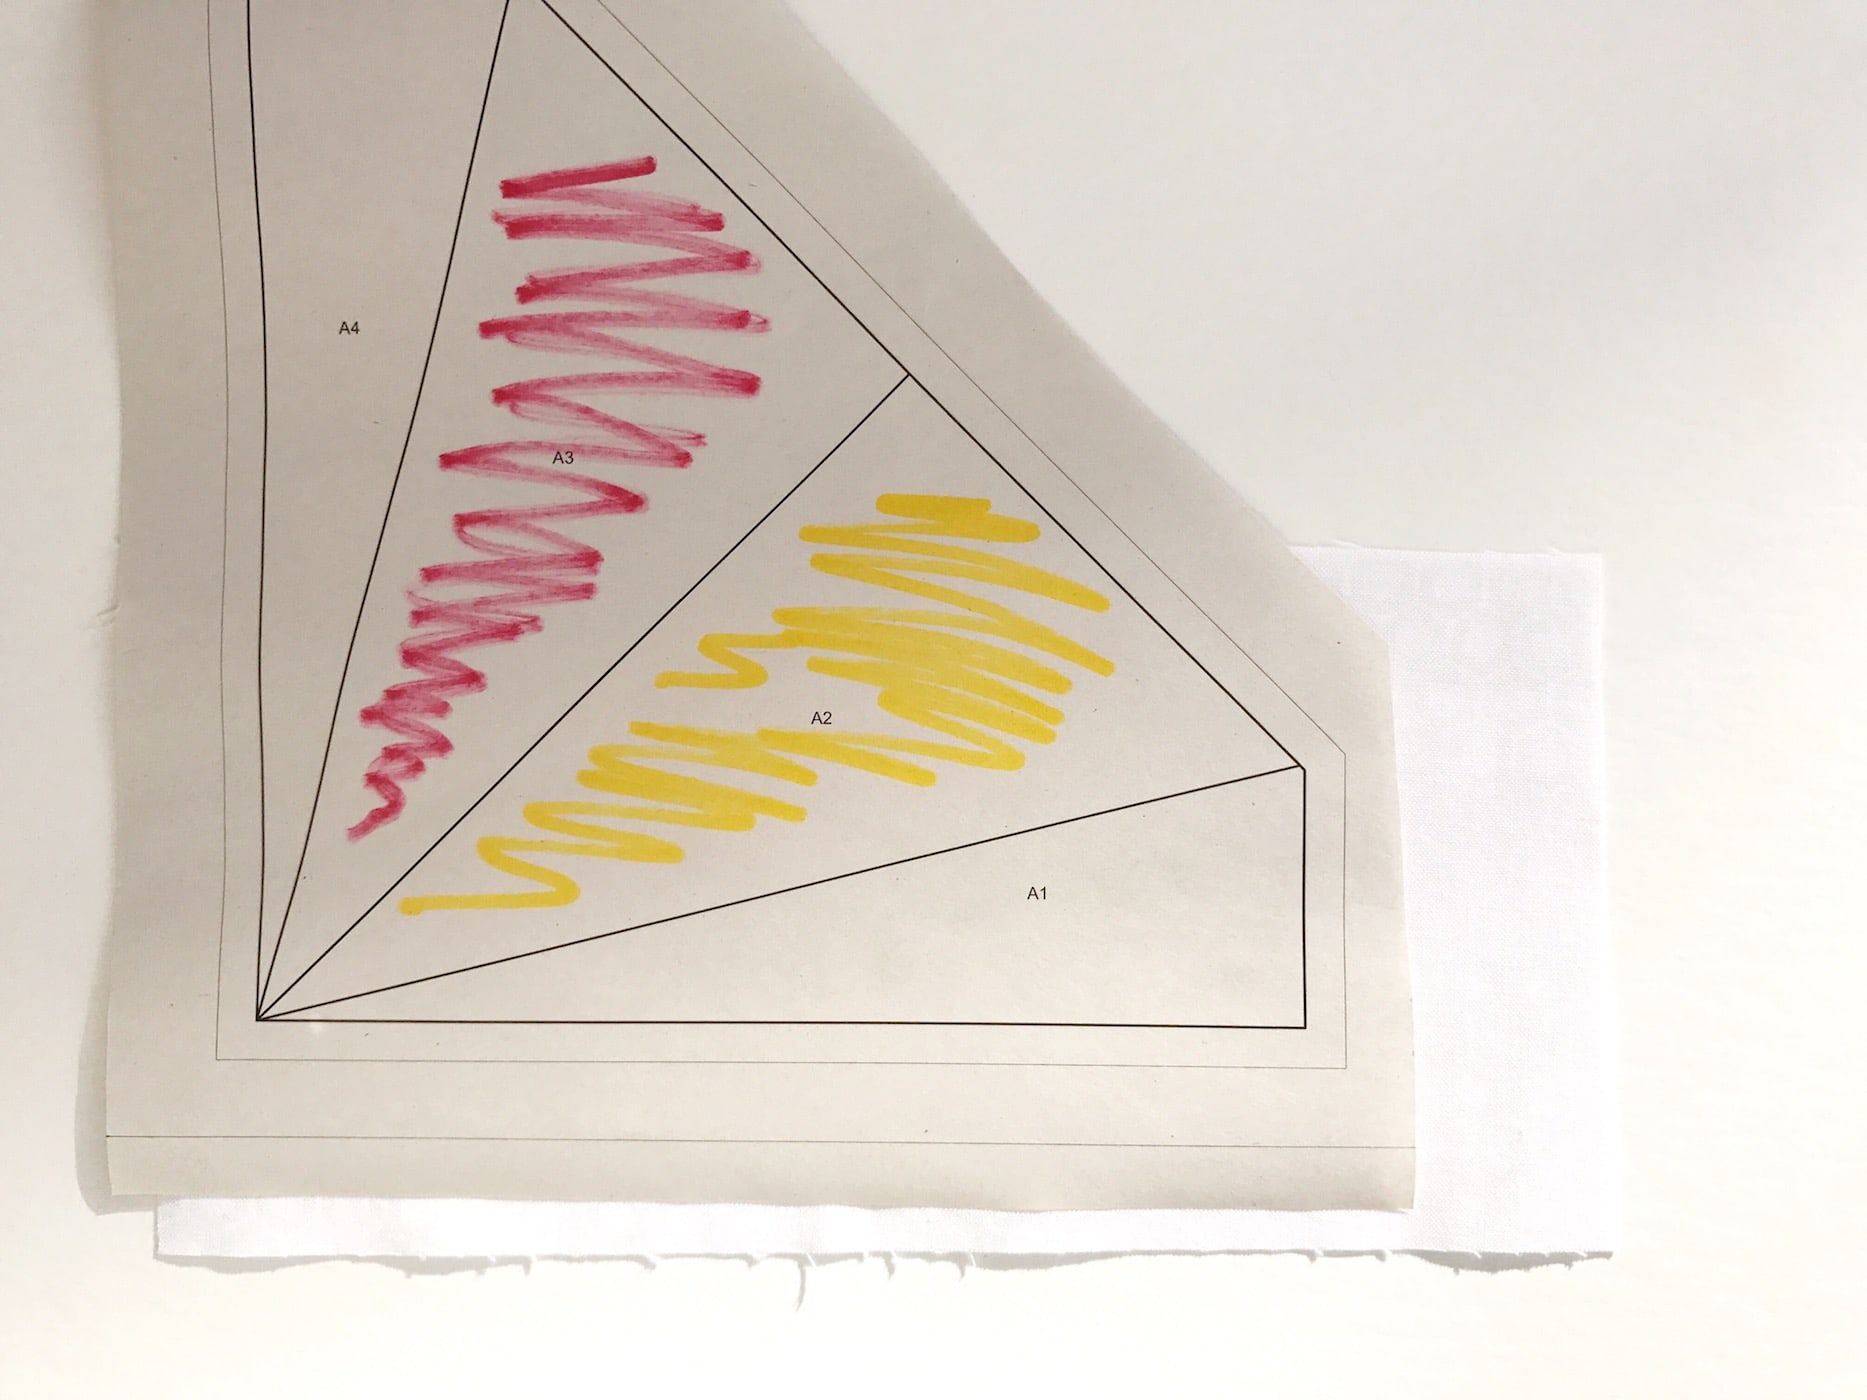 Apprenez à créer un morceau de papier de base avec ce modèle gratuit d'assemblage de papier cerf-volant. #quilts #quilting #fpp #foundationpaperpiecing #tutorial #freequiltpattern